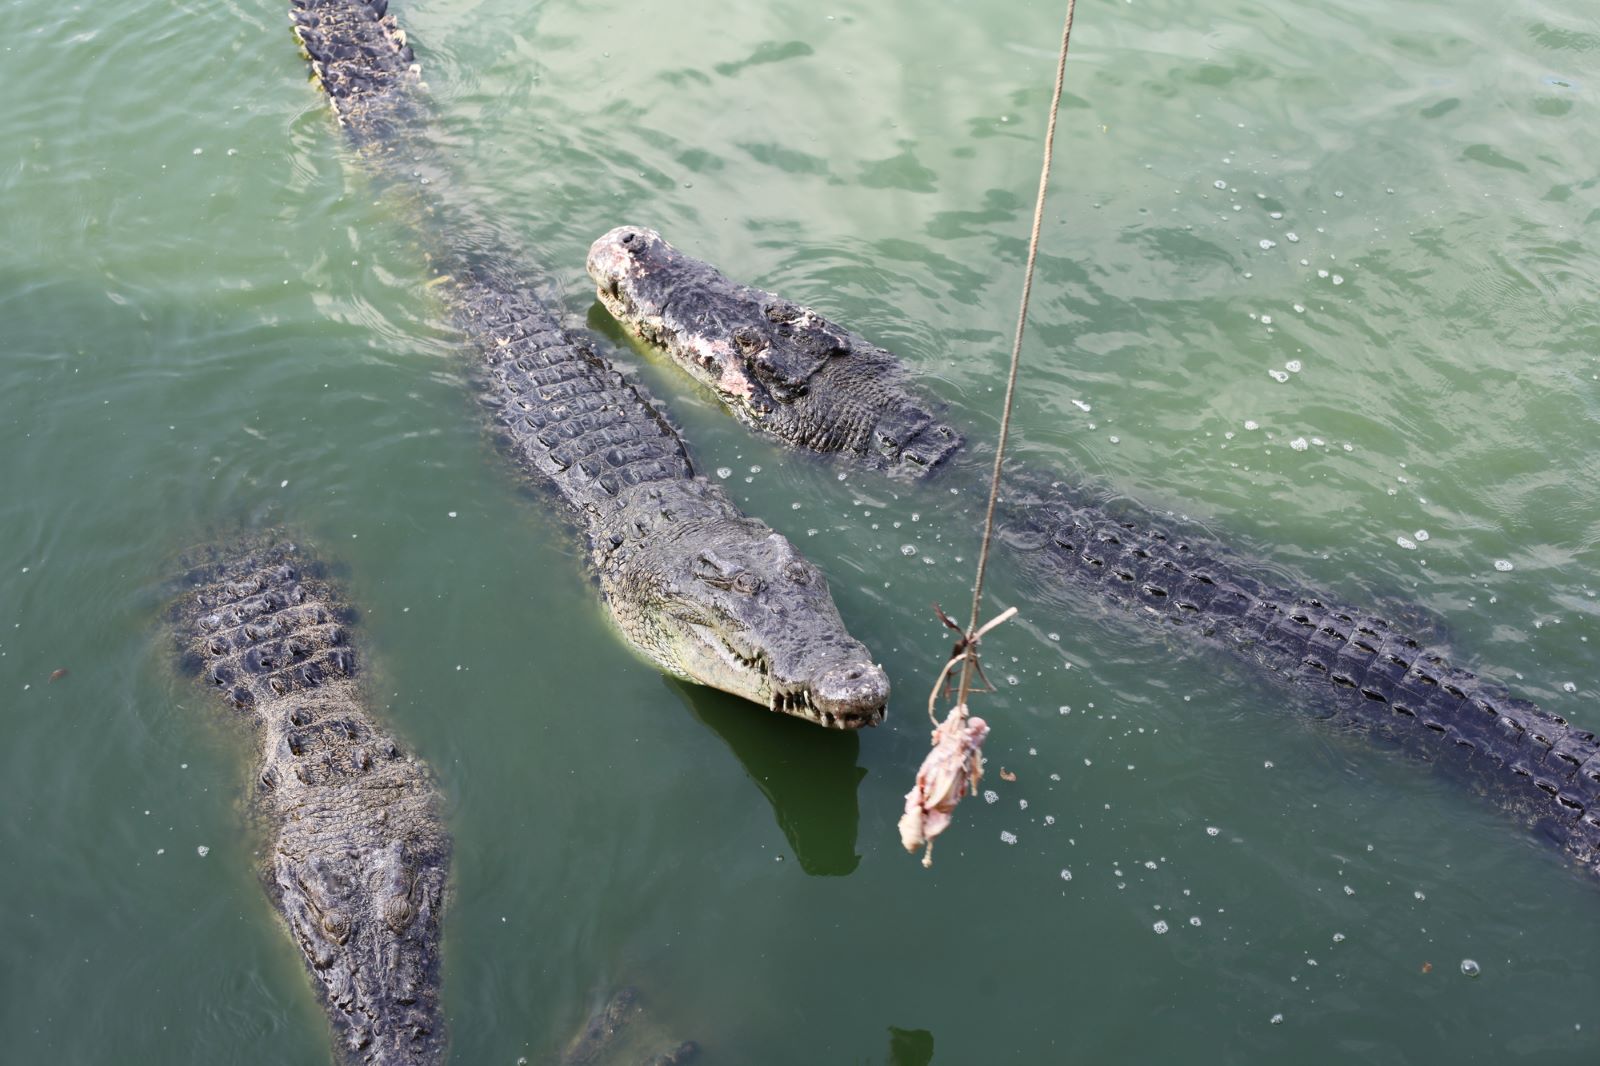 Alligator Feeding